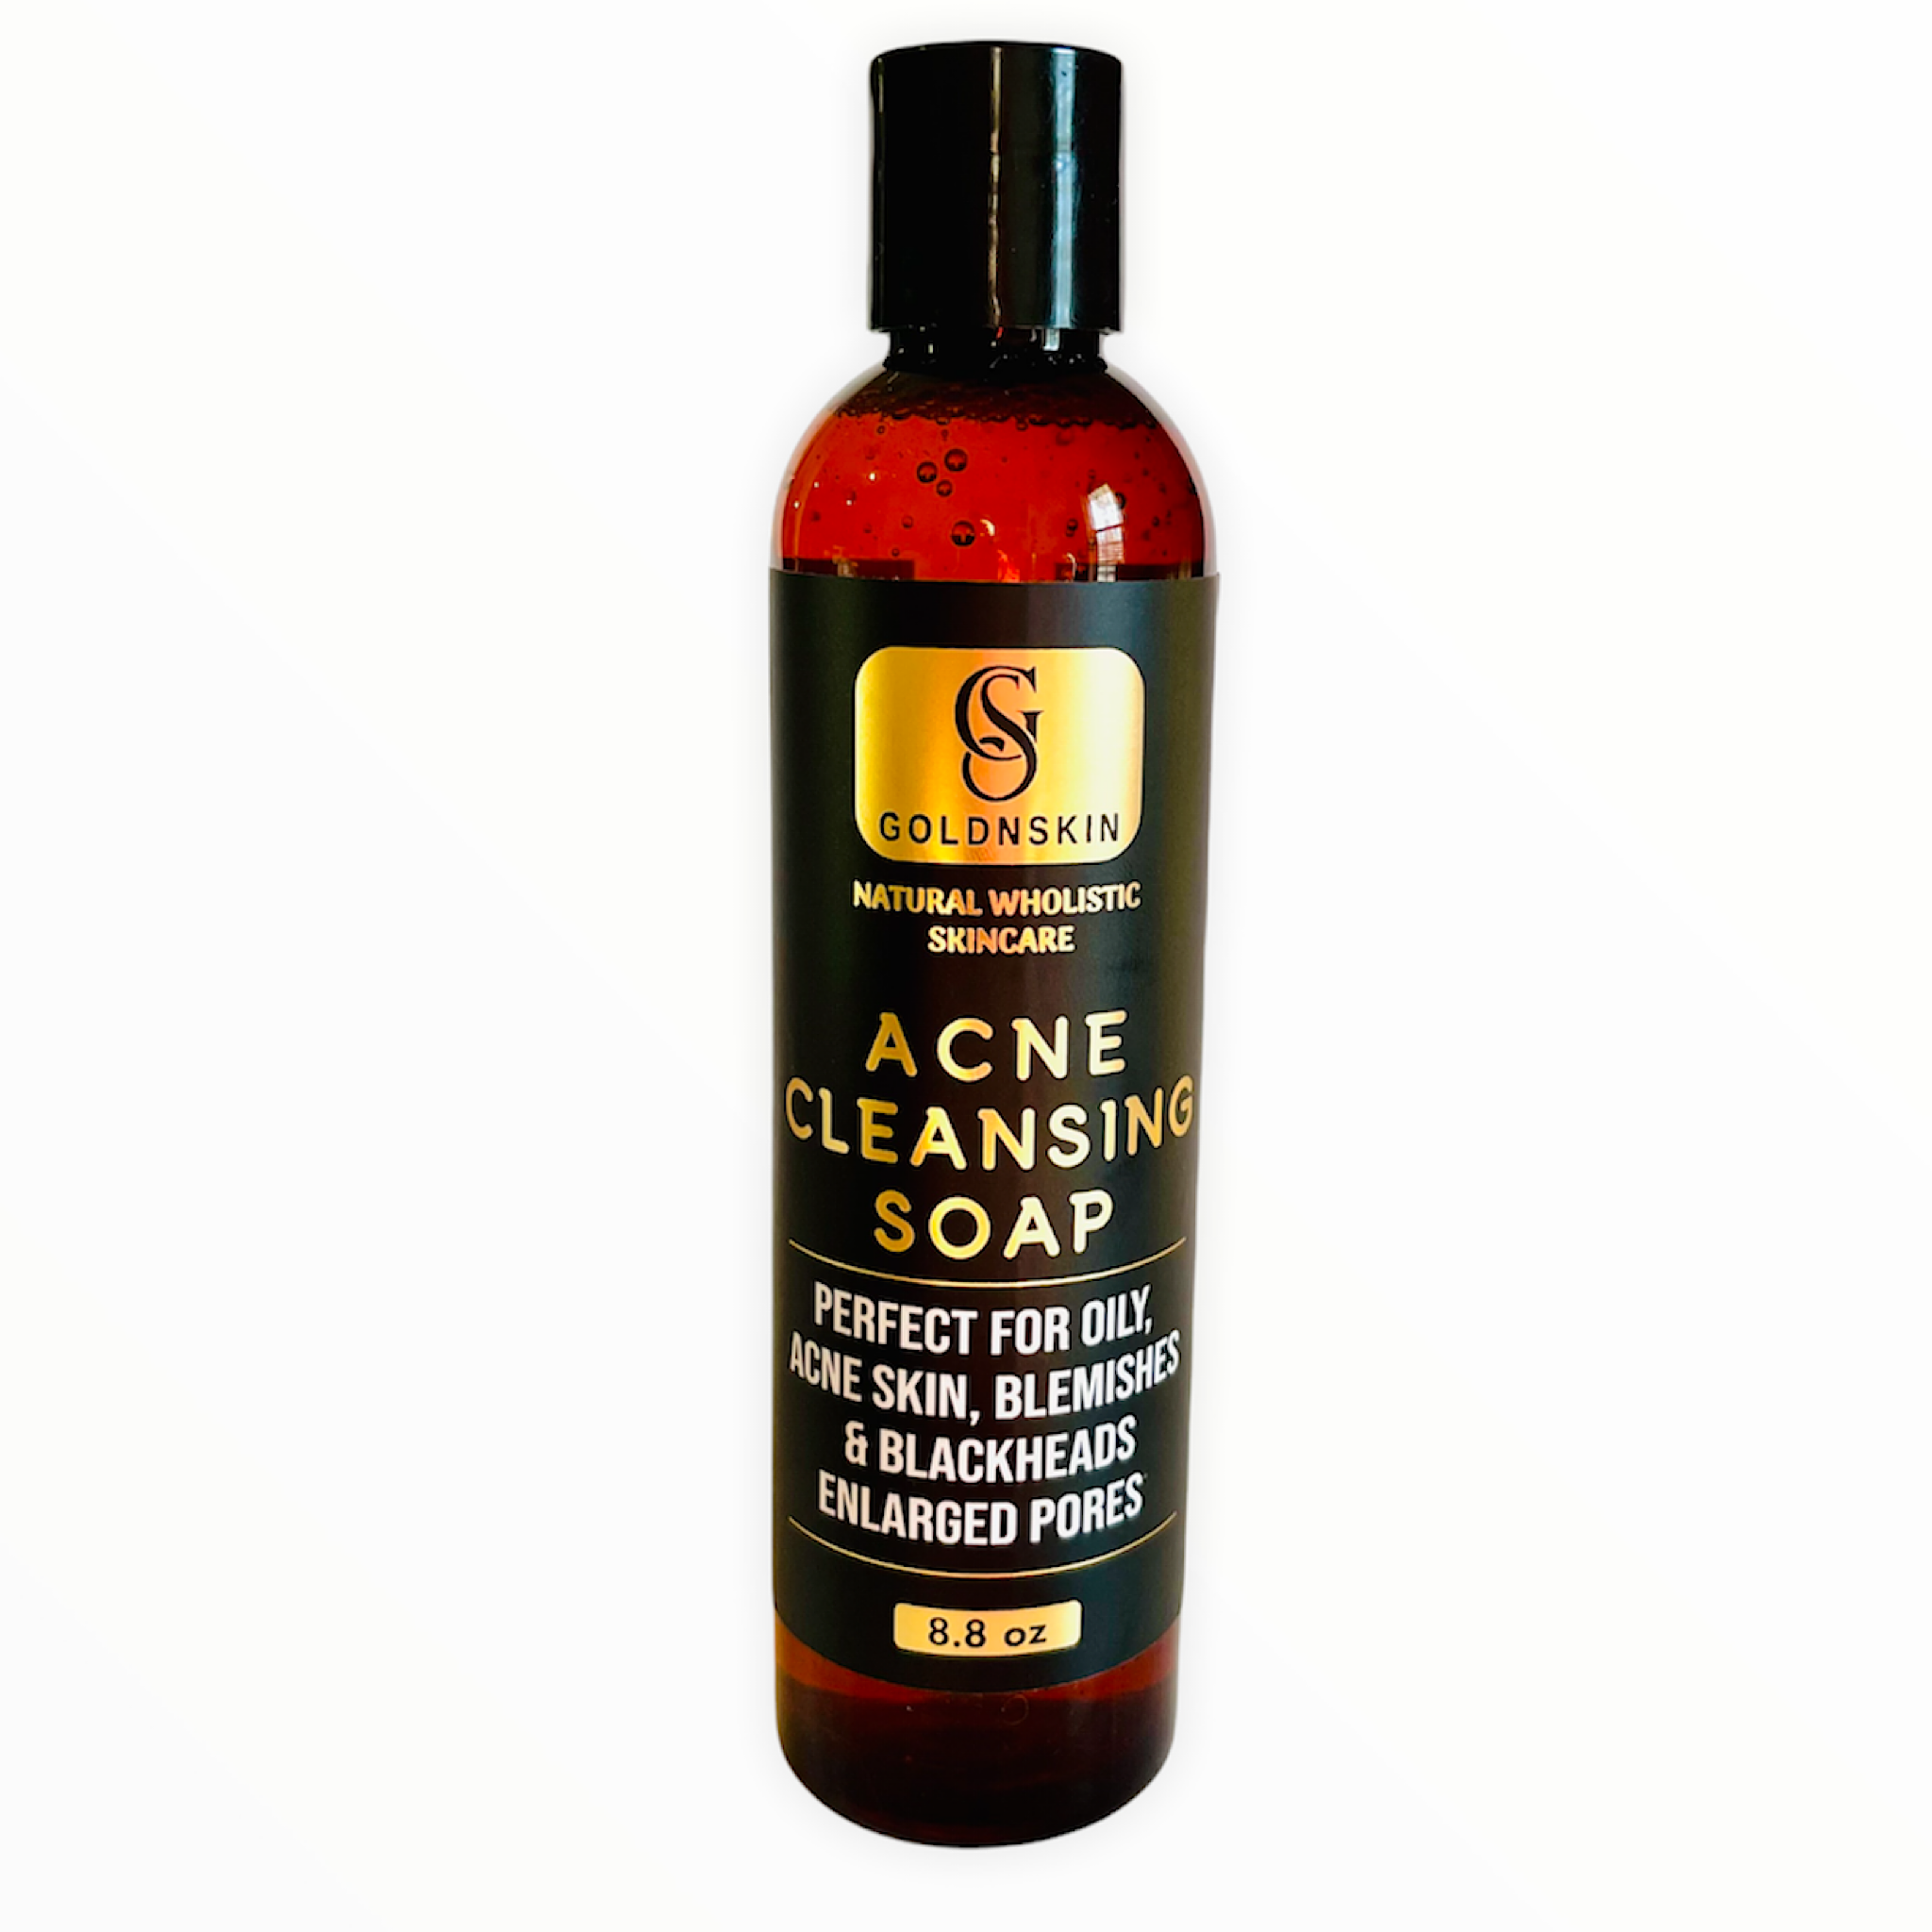 Goldnskin acne cleansing soap